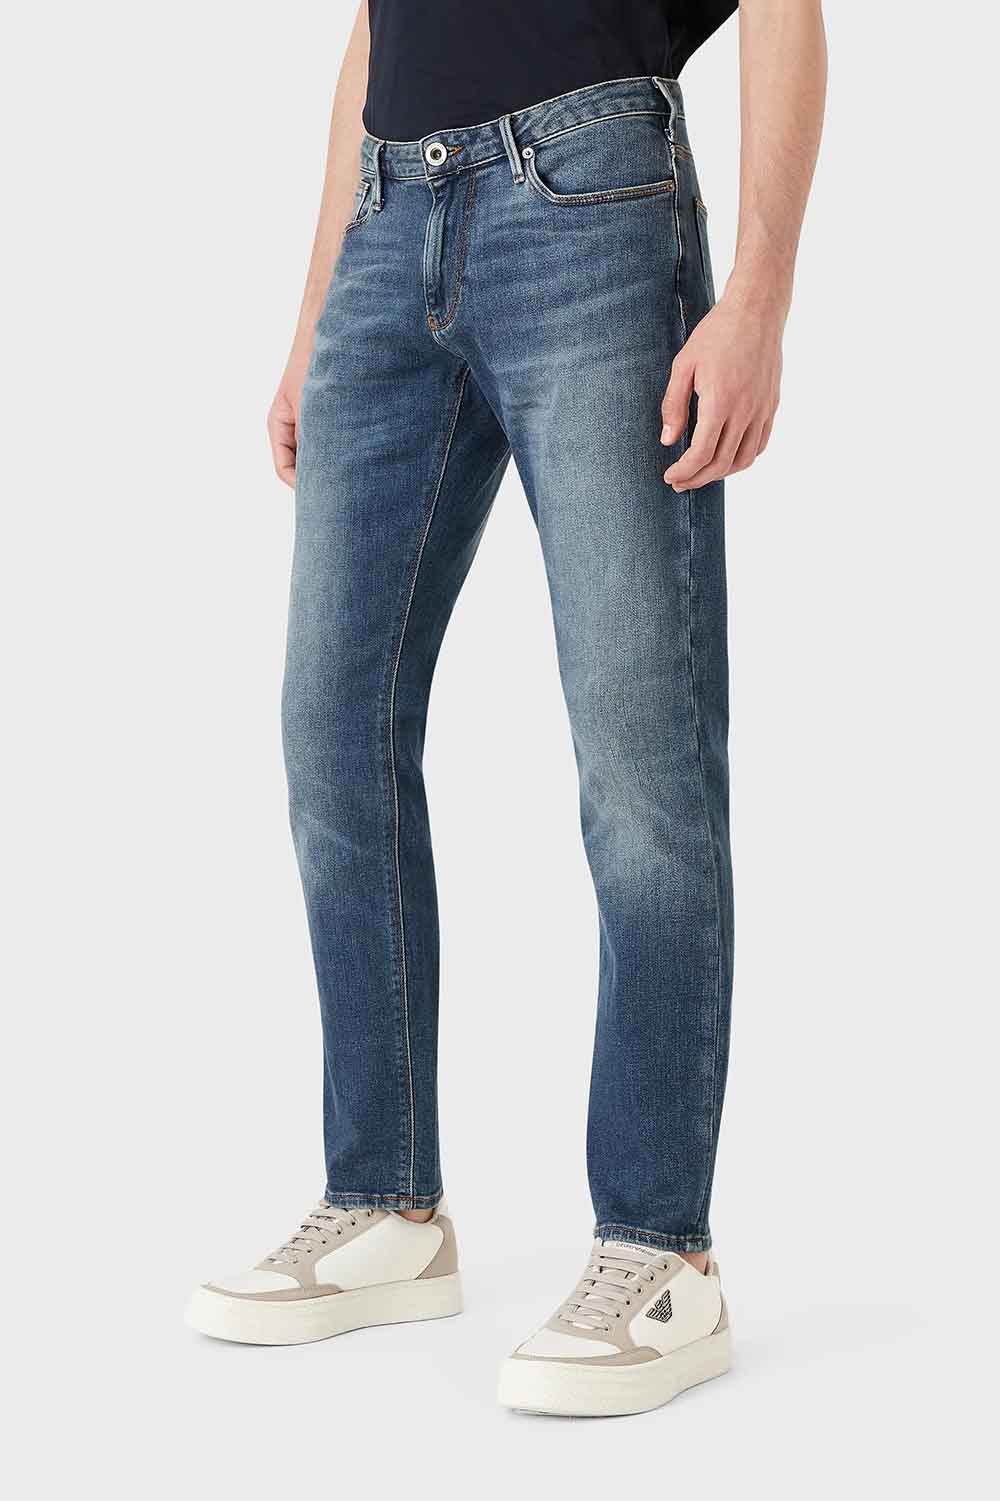 Pantal?n de la marca Emporio Armani Jeans